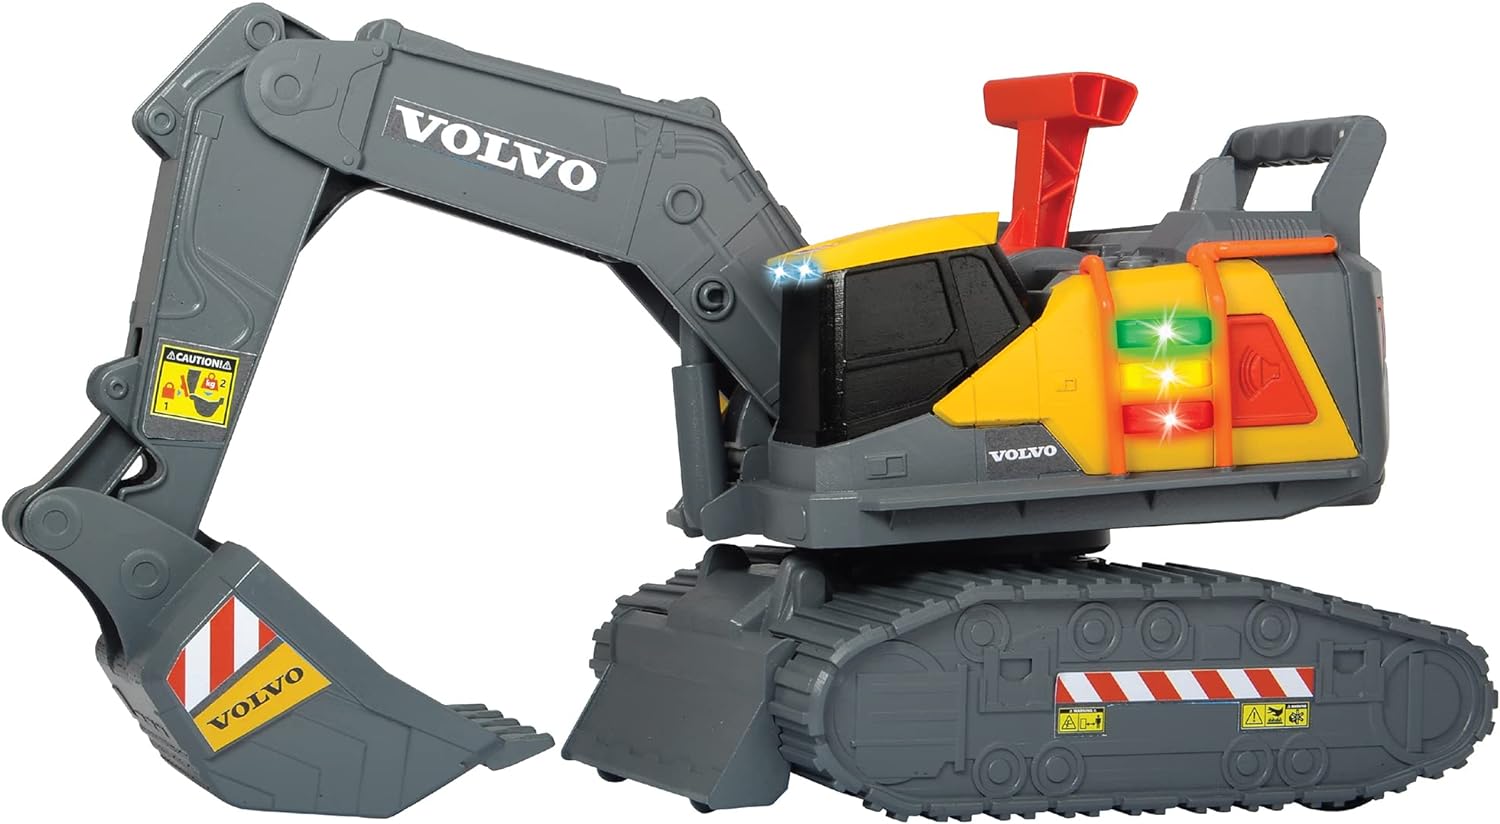 203725006 Dickie toys Volvo Escavatore cm. 30, rileva il peso, luci e suoni